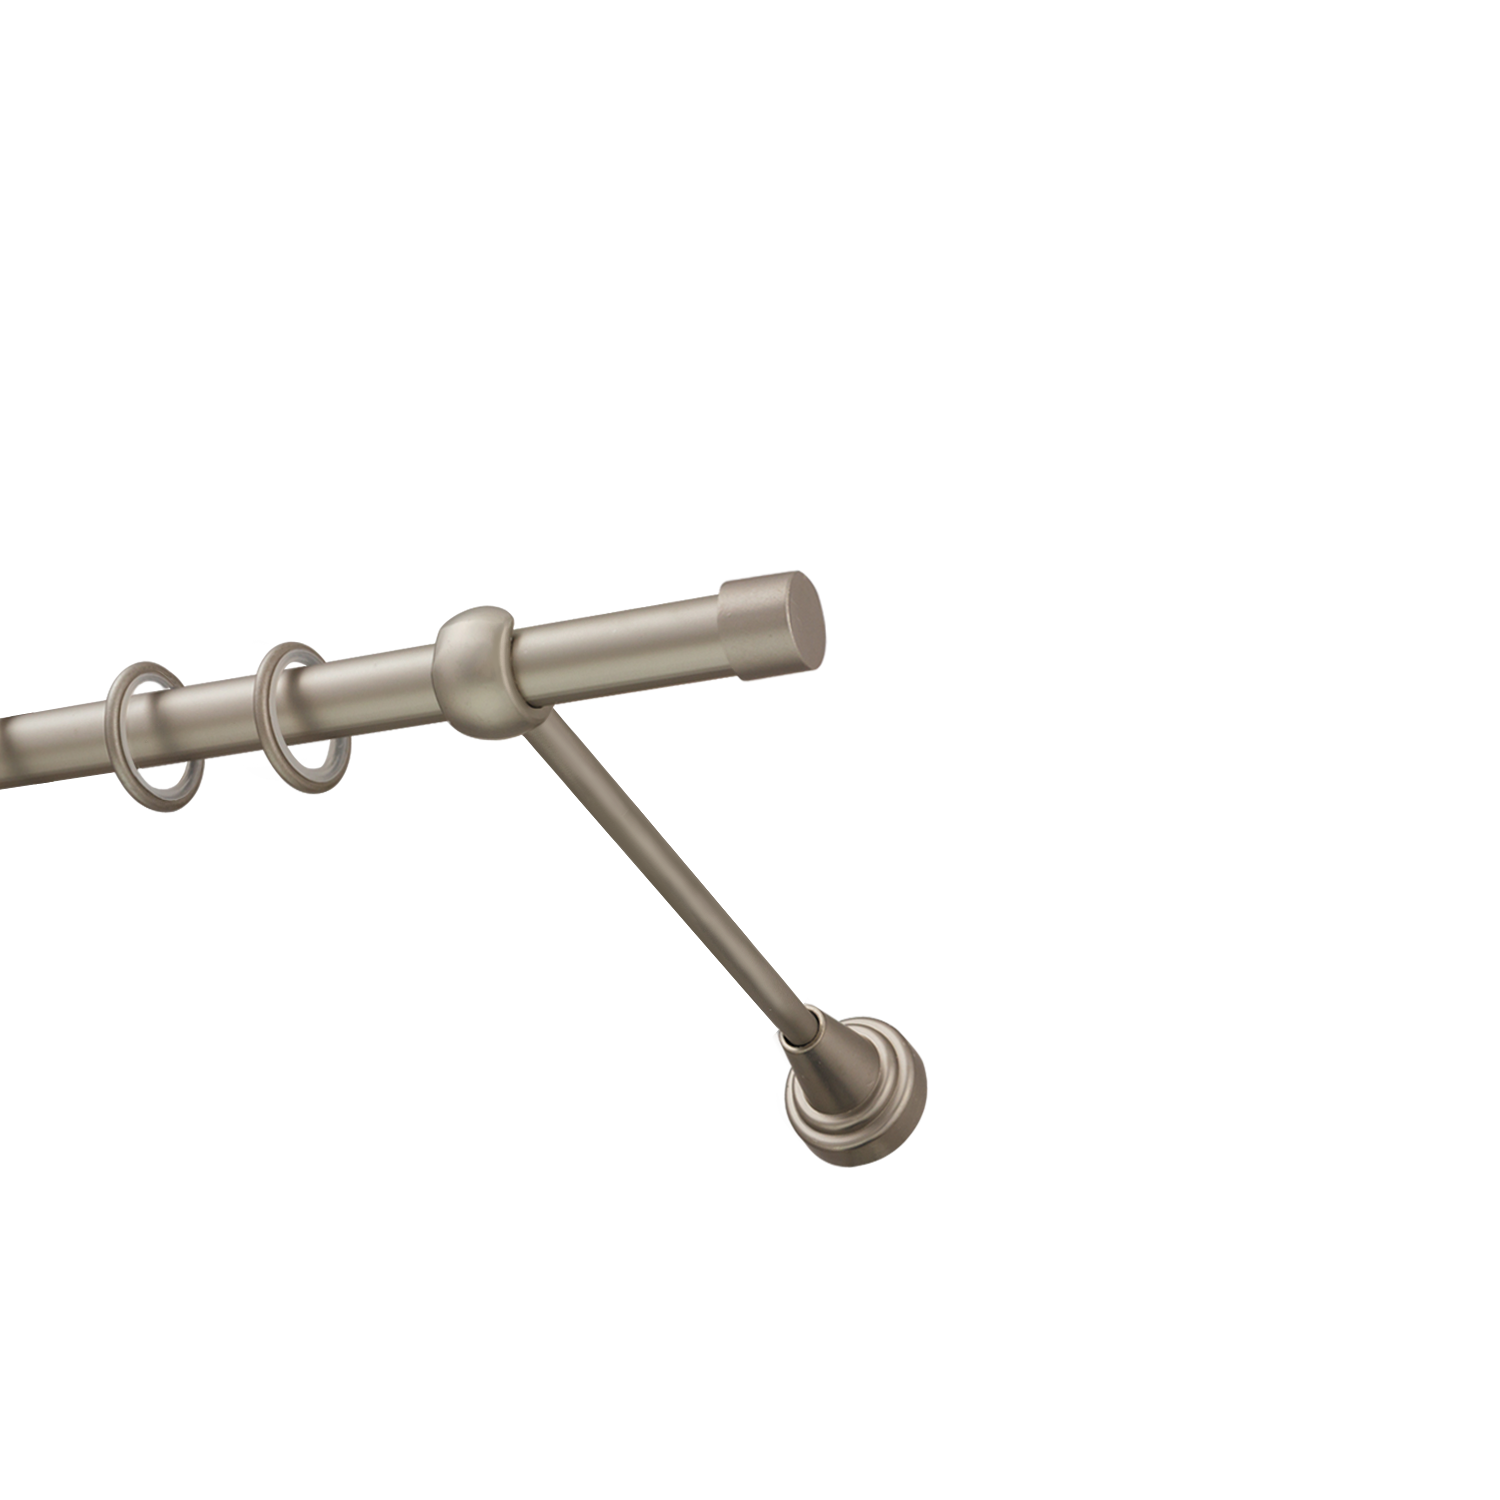 Металлический карниз для штор Заглушка, однорядный 16 мм, сталь, гладкая штанга, длина 160 см - фото Wikidecor.ru